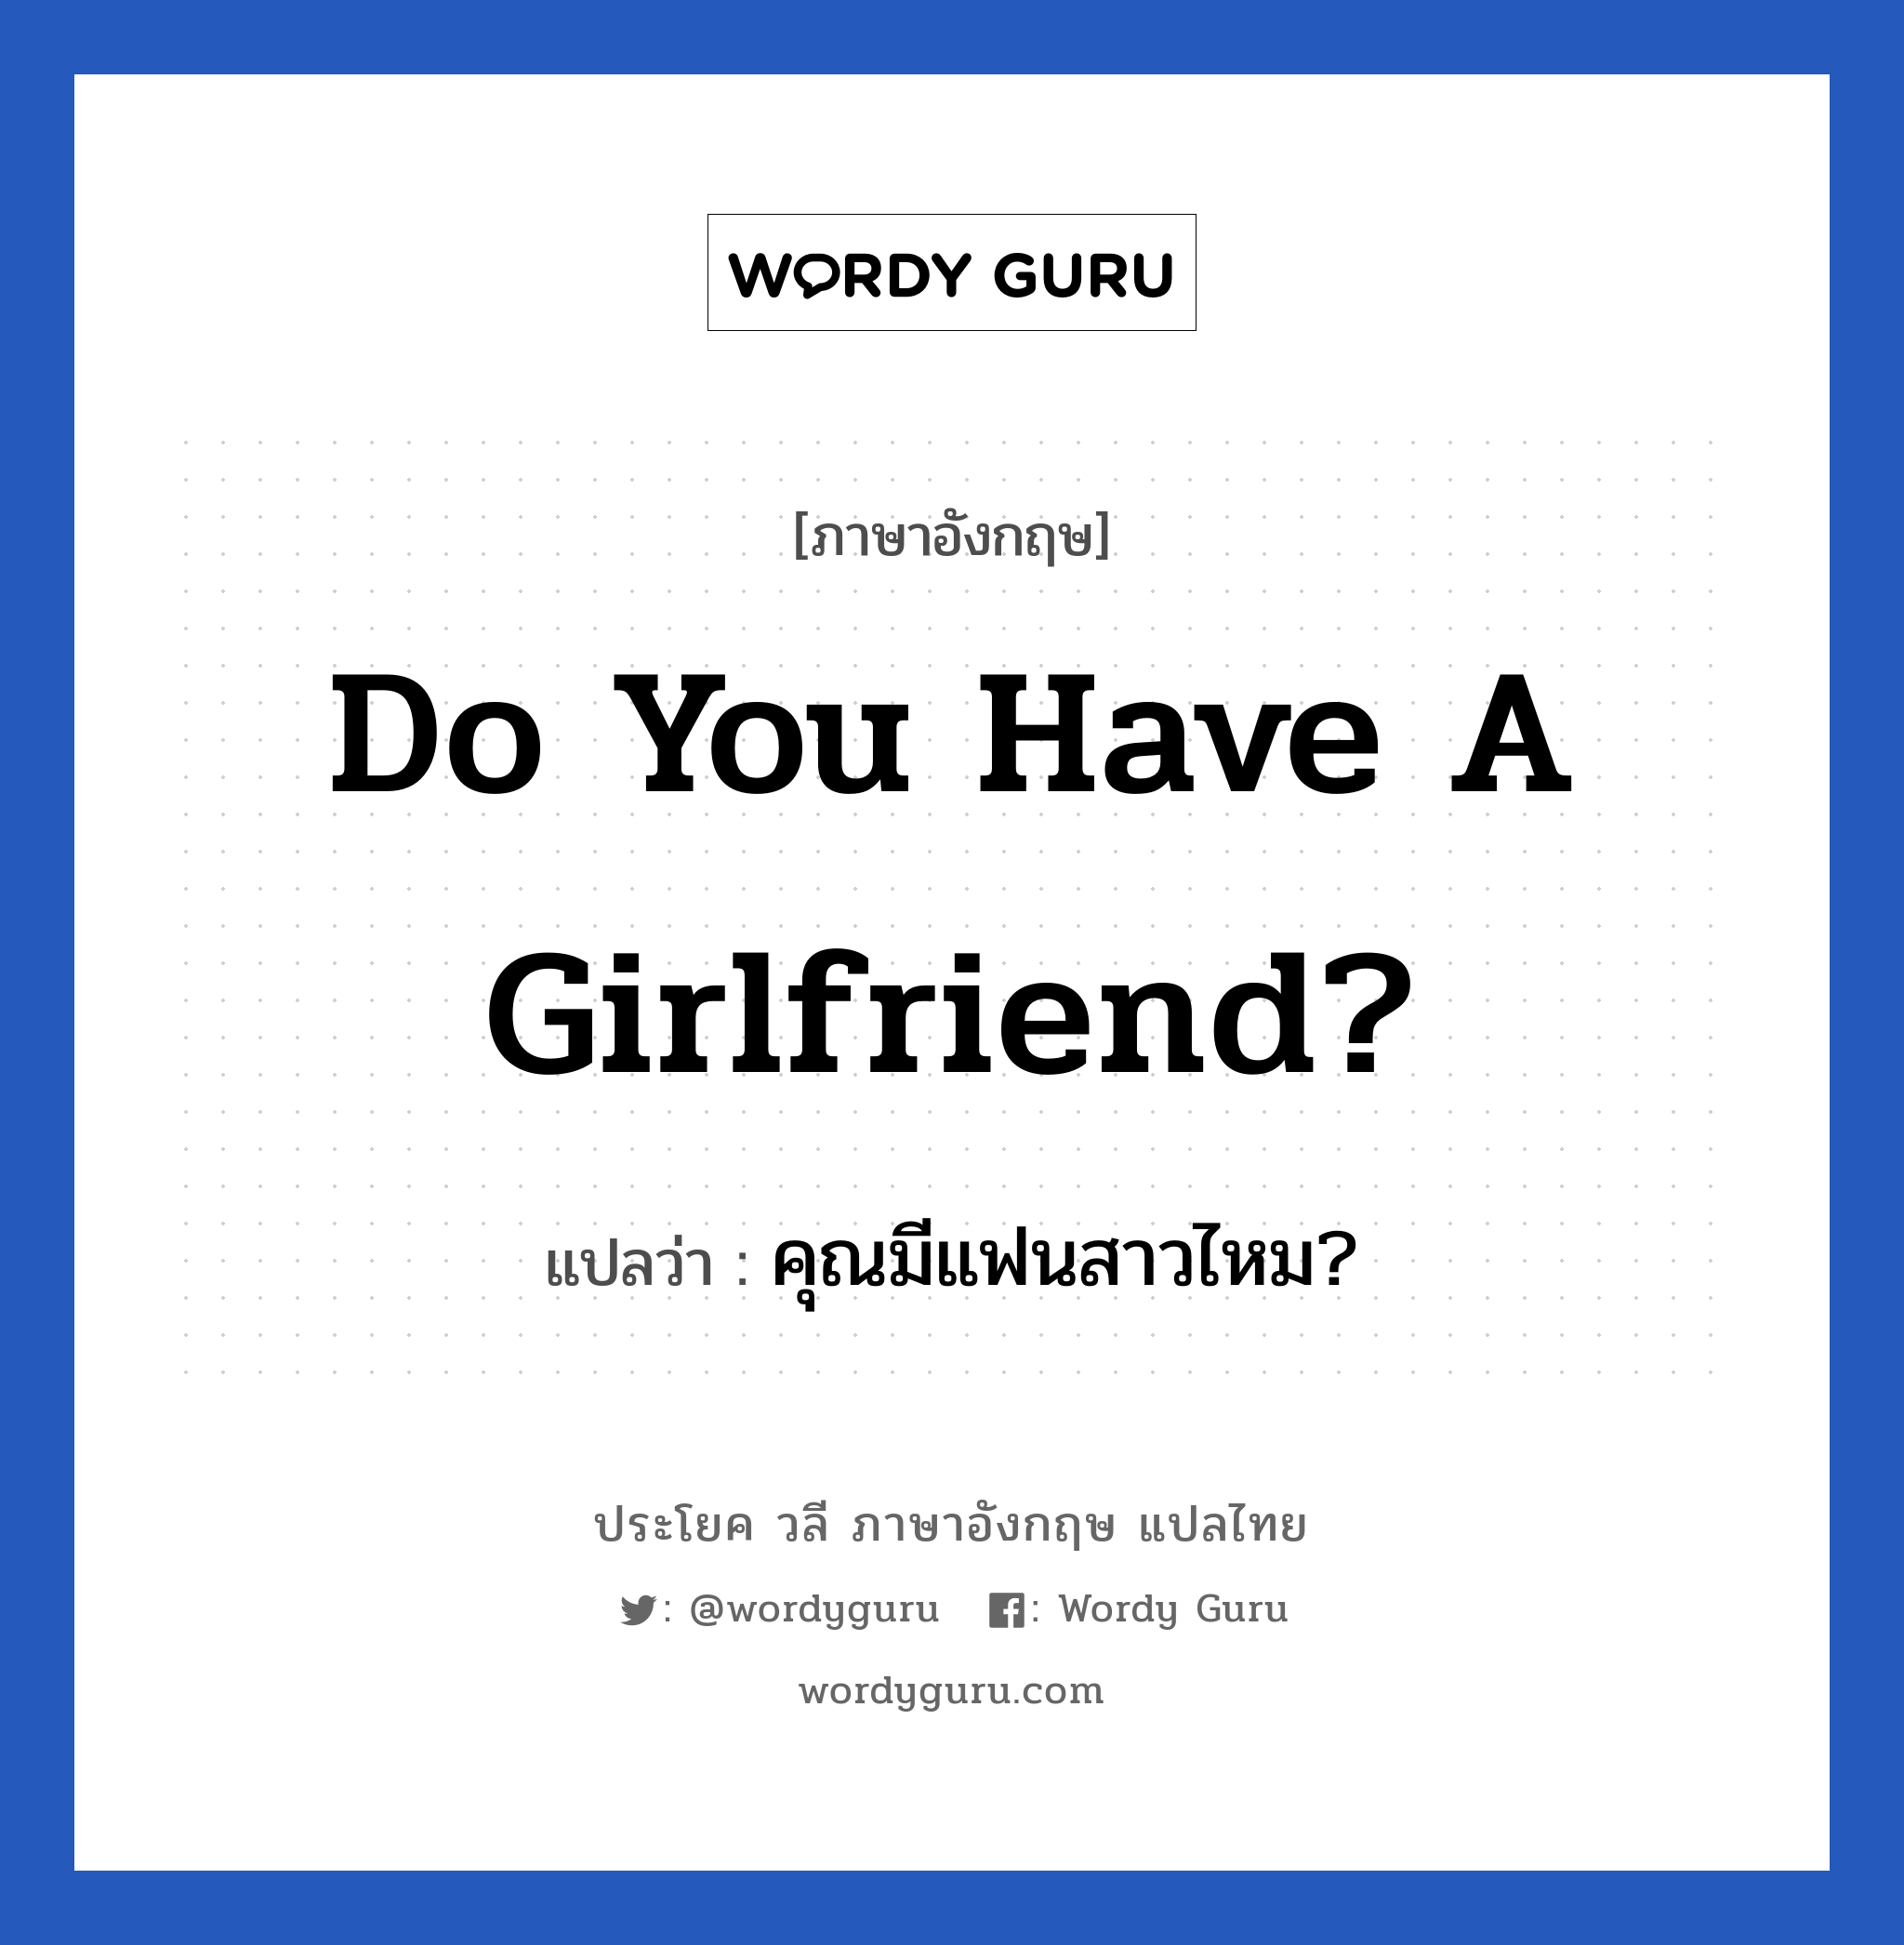 คุณมีแฟนสาวไหม? ภาษาอังกฤษ?, วลีภาษาอังกฤษ คุณมีแฟนสาวไหม? แปลว่า Do you have a girlfriend?